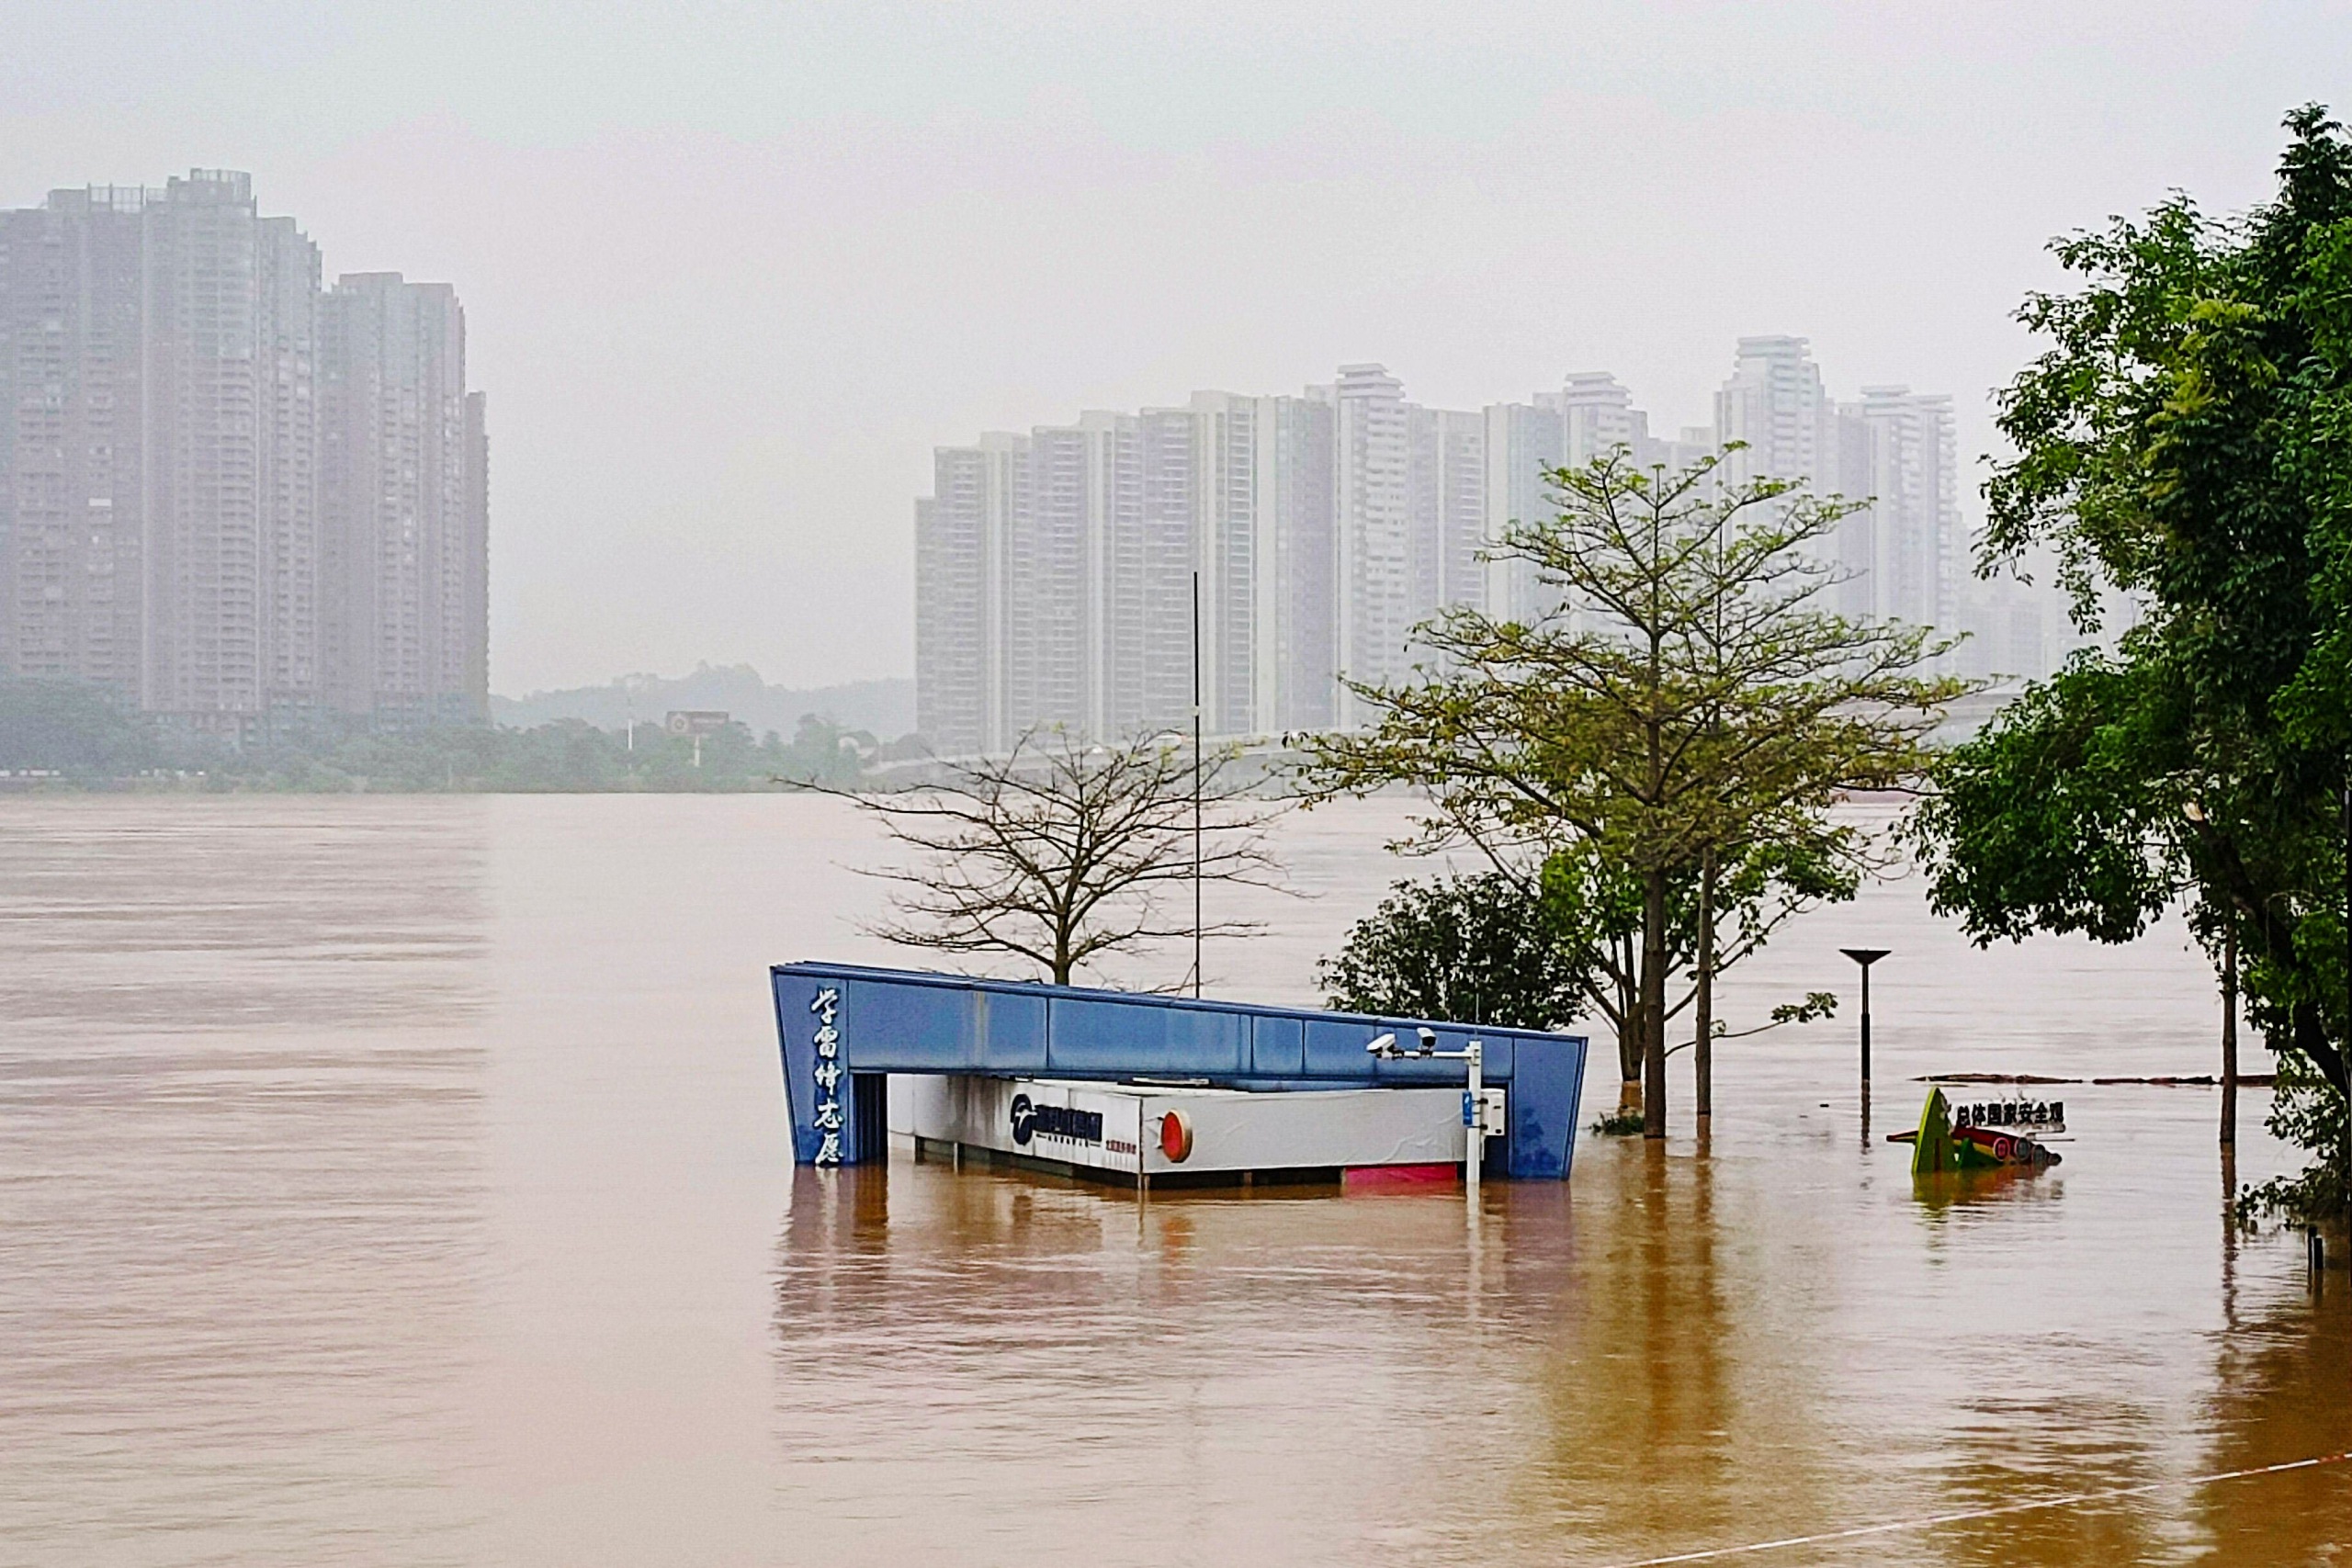 etelä-kiinaan korkeimman tason kaatosade- ja tulvavaroitus